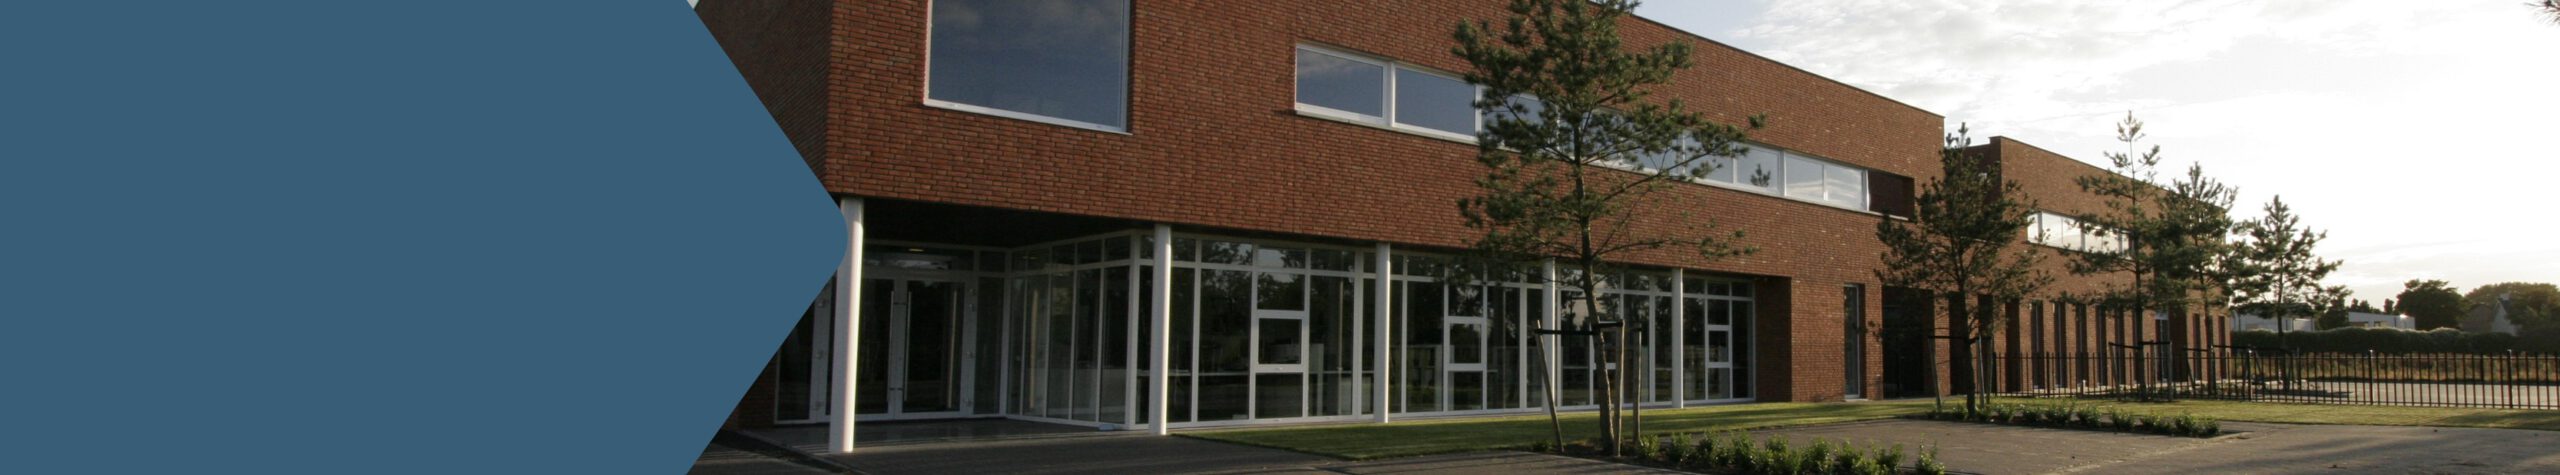 Vacature Office Manager Van der Schoot Architecten Schijndel Meierijstad via Xlix Recruitment werving en selectie Heesch Bernheze Oss Uden Veghel Den Bosch Eindhoven Boxtel Best Sint-Oedenrode